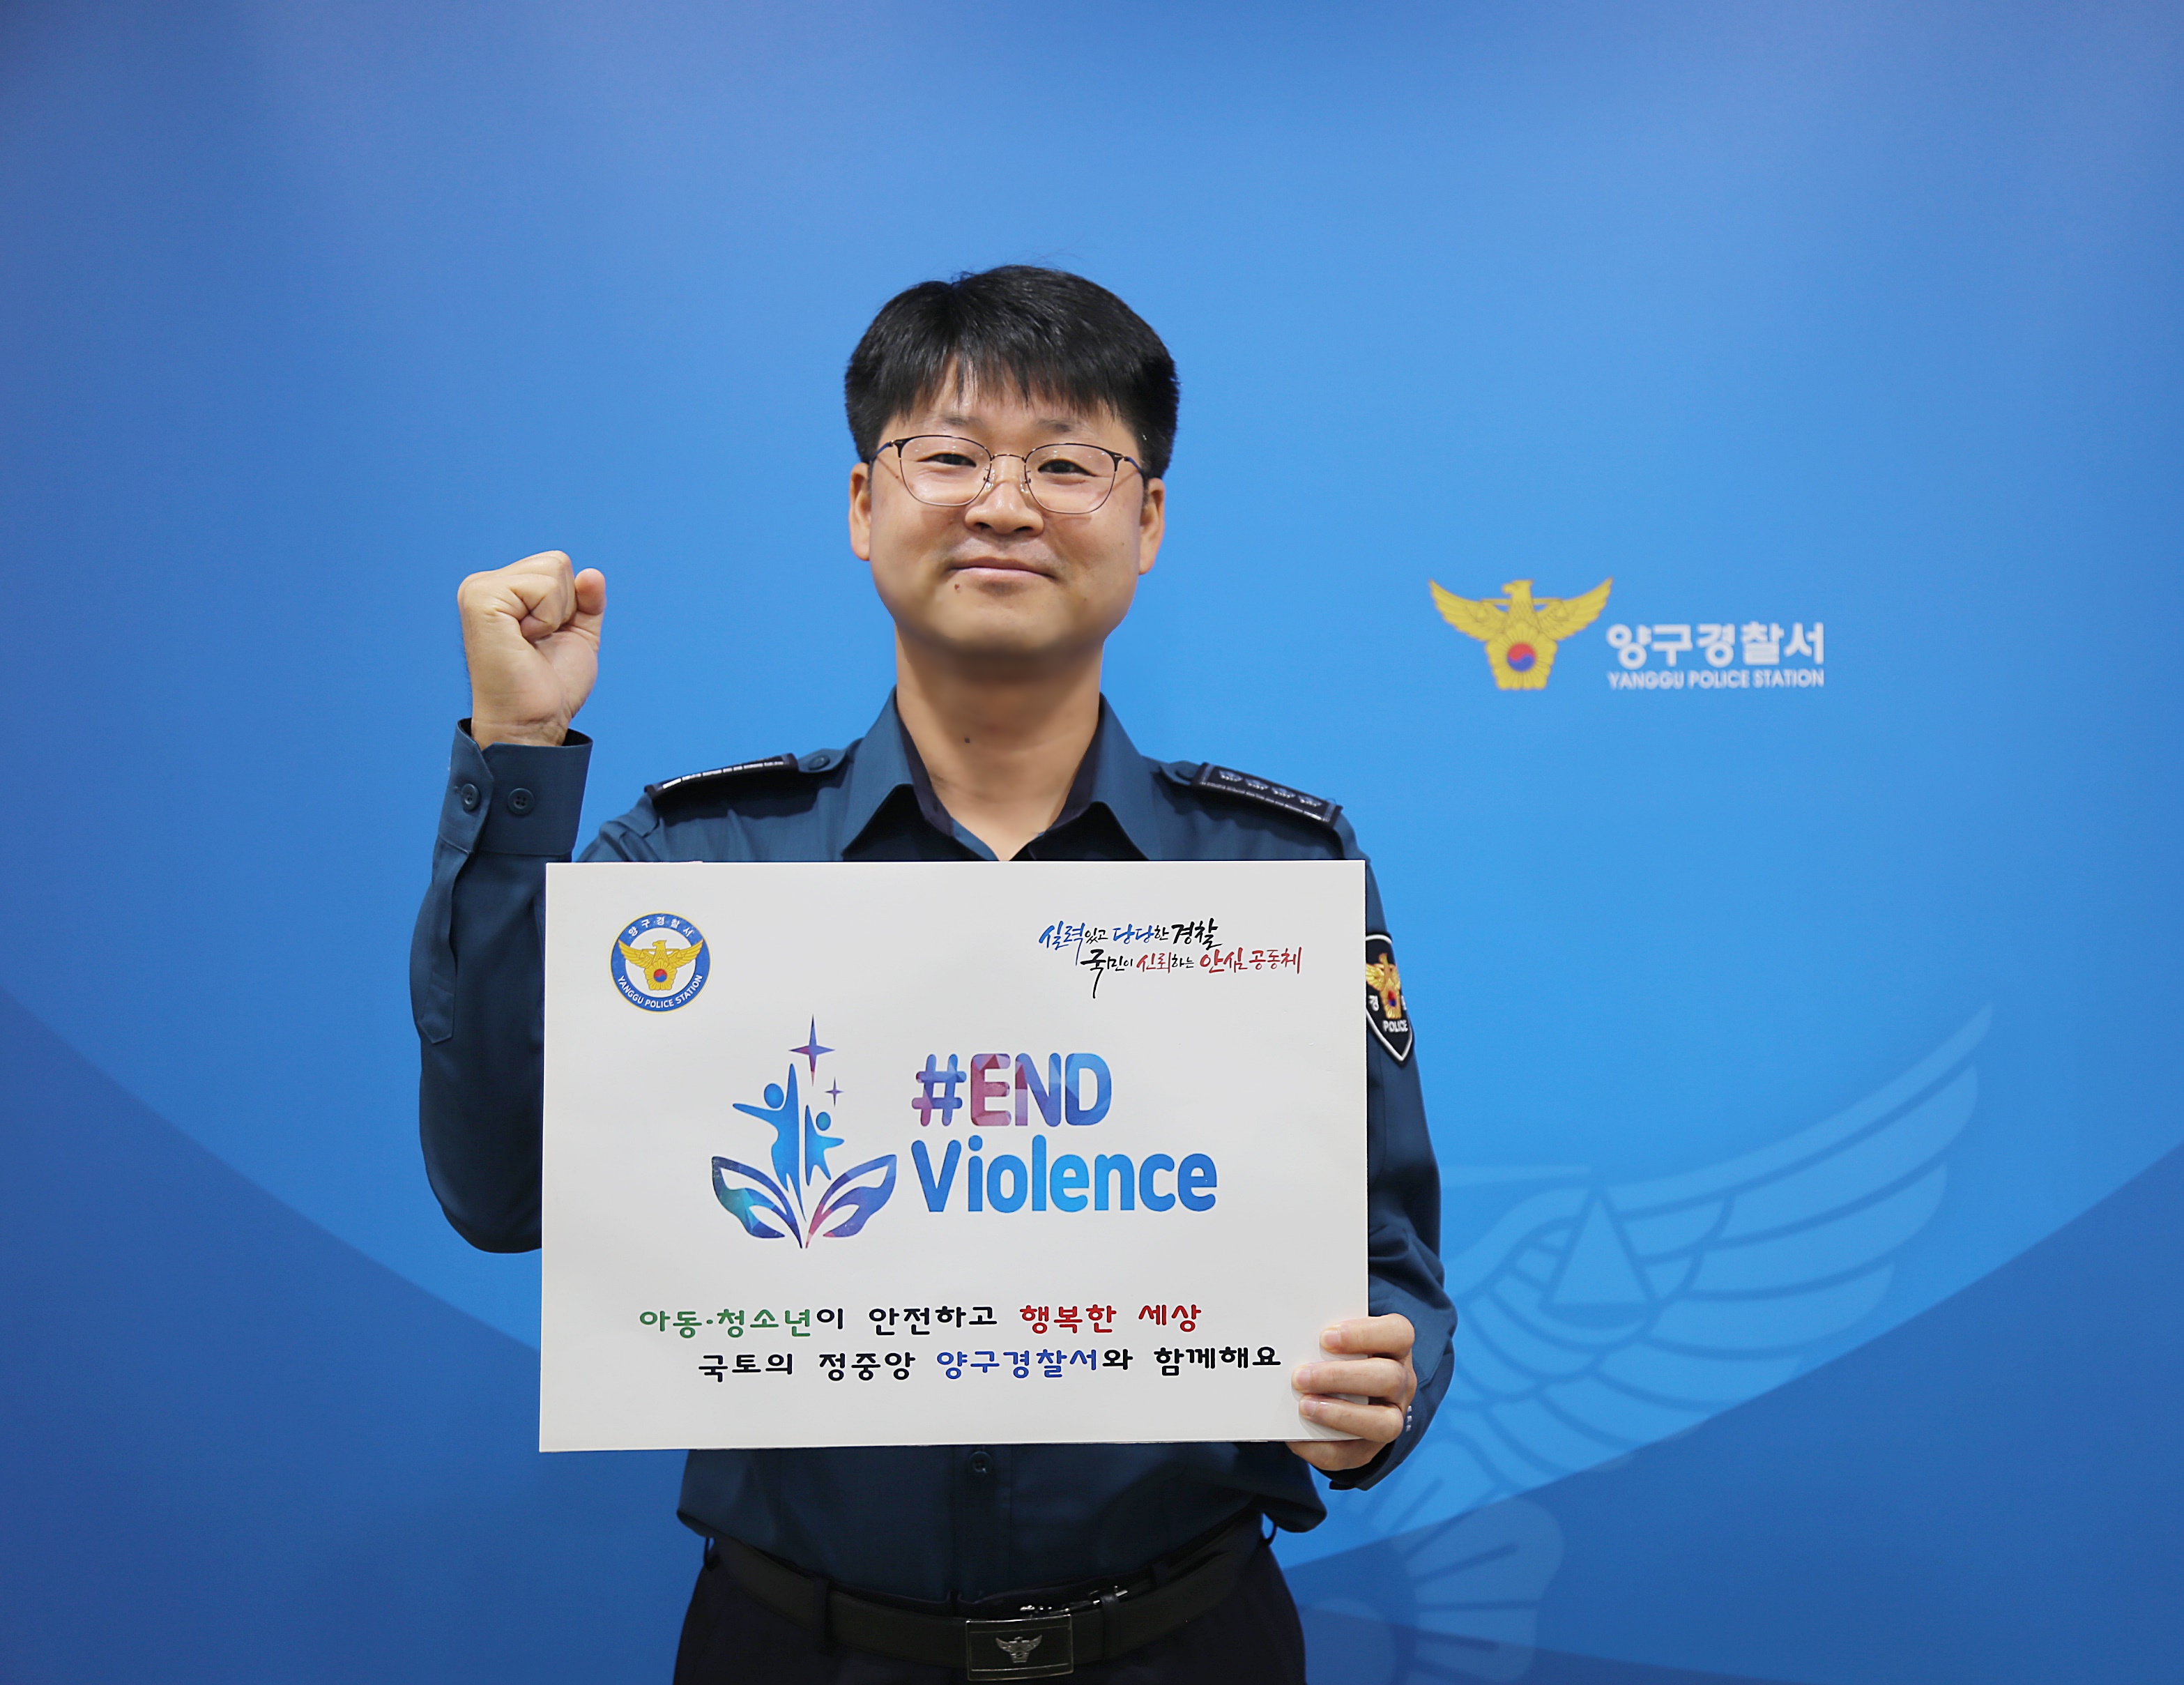 아동,청소년 폭력 근절 온라인 캠페인(양구서)-이용욱 서장님 첼린지 사진